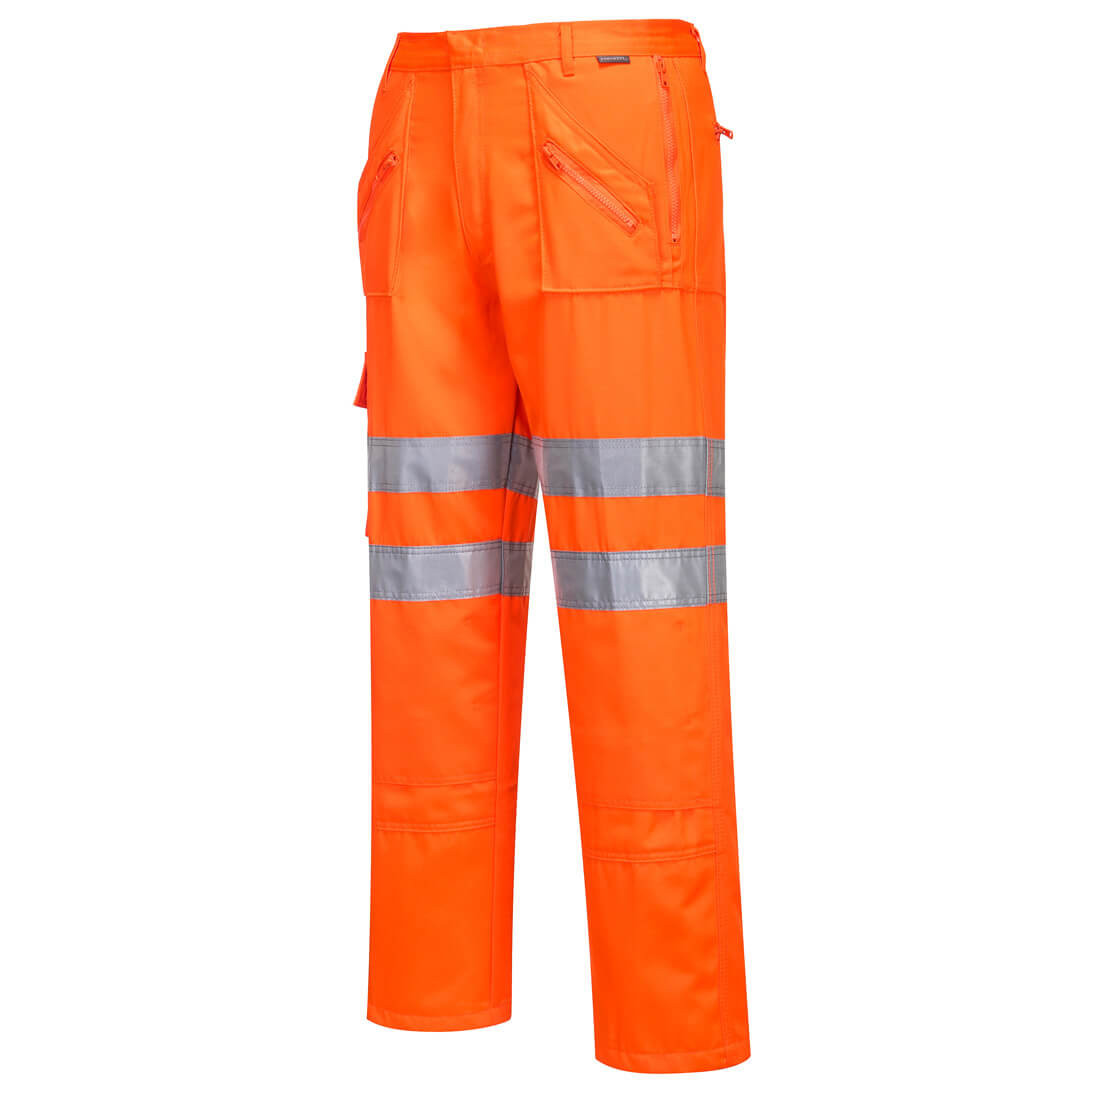 Pantaloni Rail Action - Imbracaminte de protectie